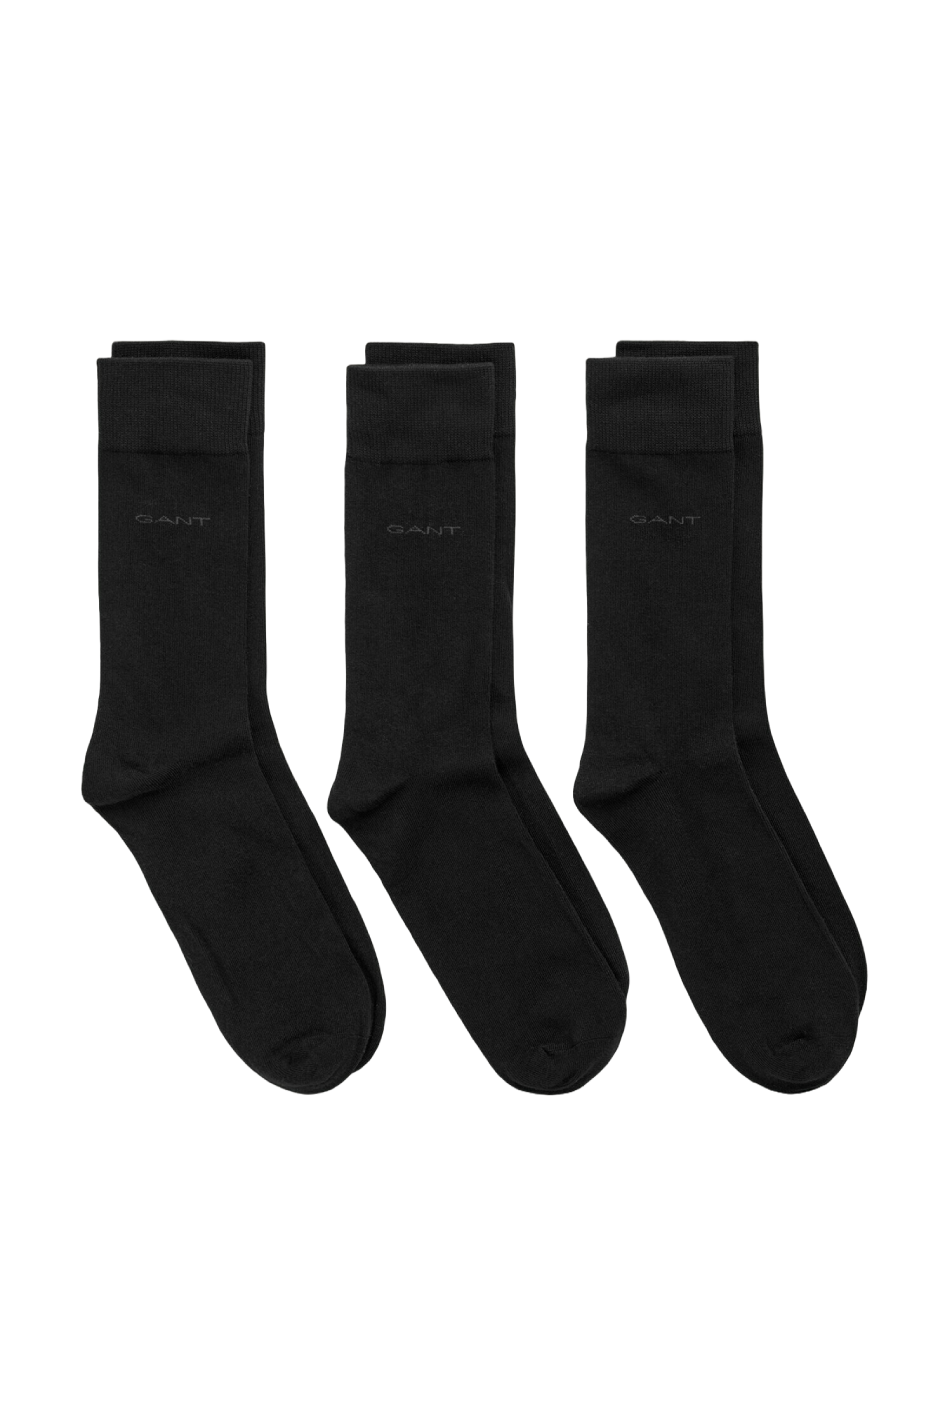 Gant 3 Pack Men's Soft Cotton Socks